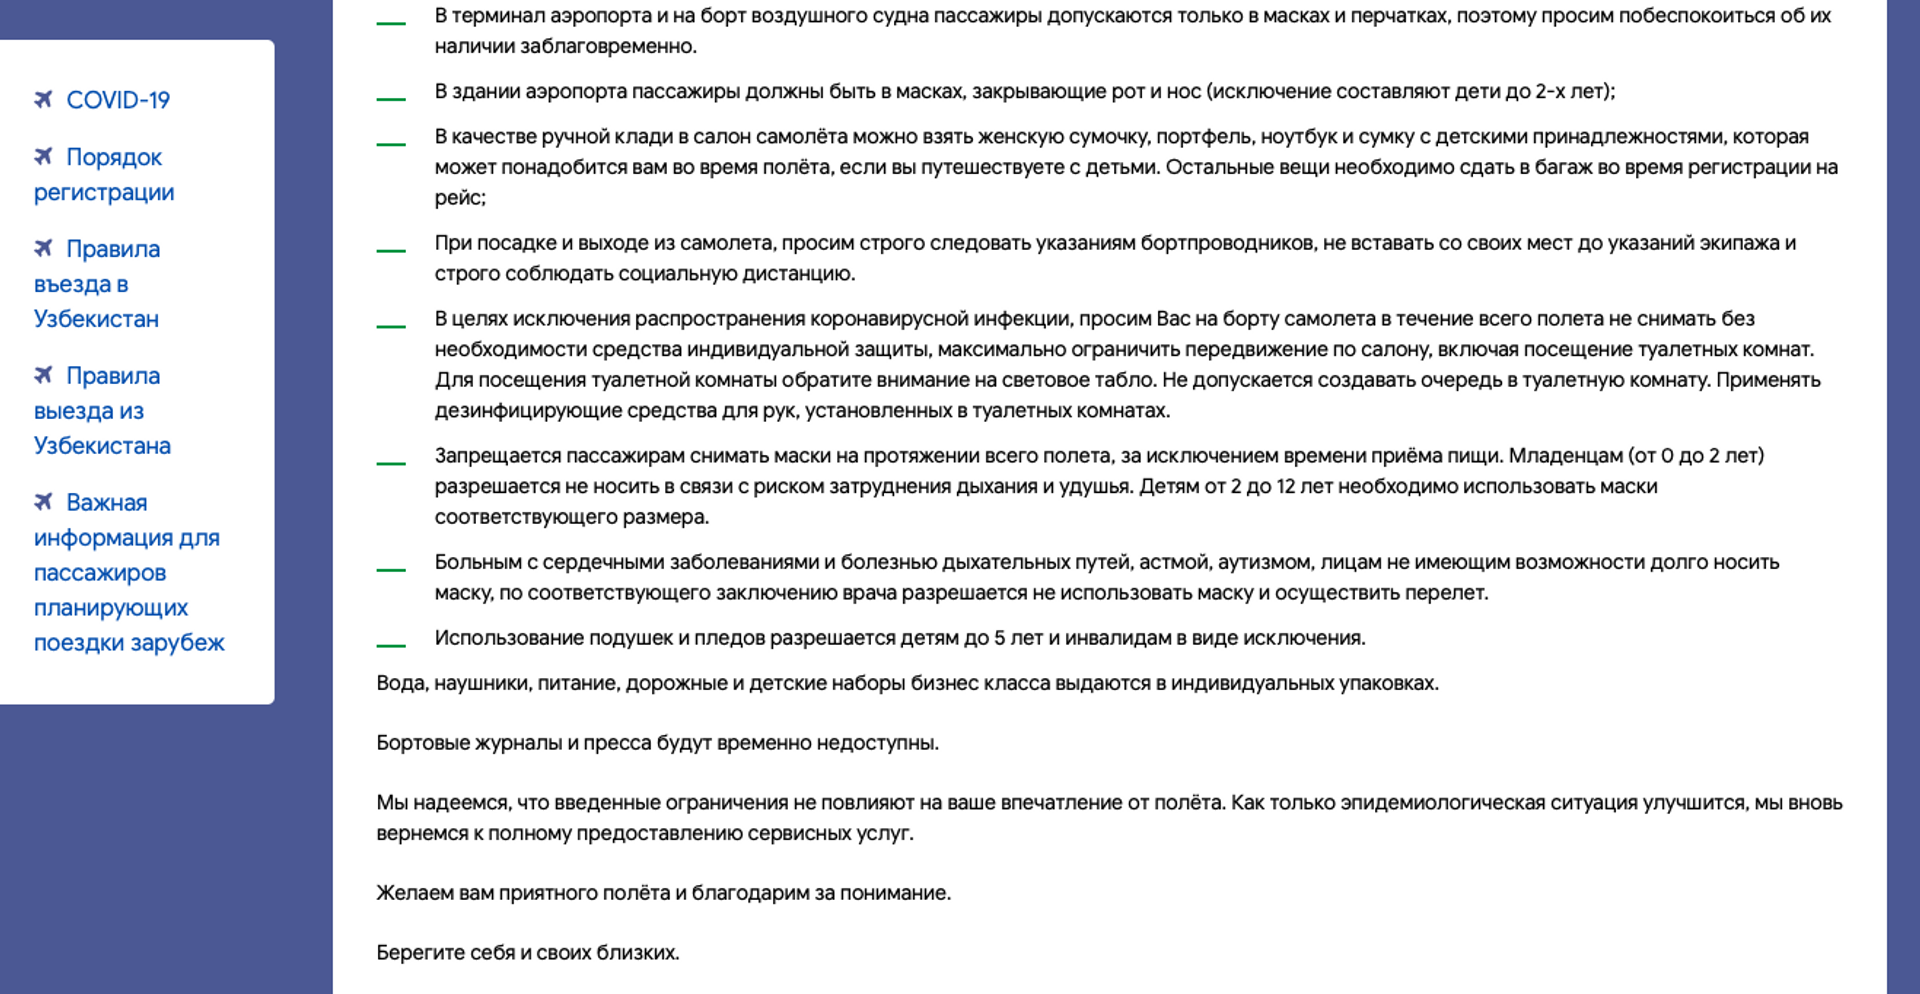 Скрин обновленной памятки UzAirways о санитарных требованиях при полетах рейсами авиакомпании - Sputnik Узбекистан, 1920, 31.07.2021